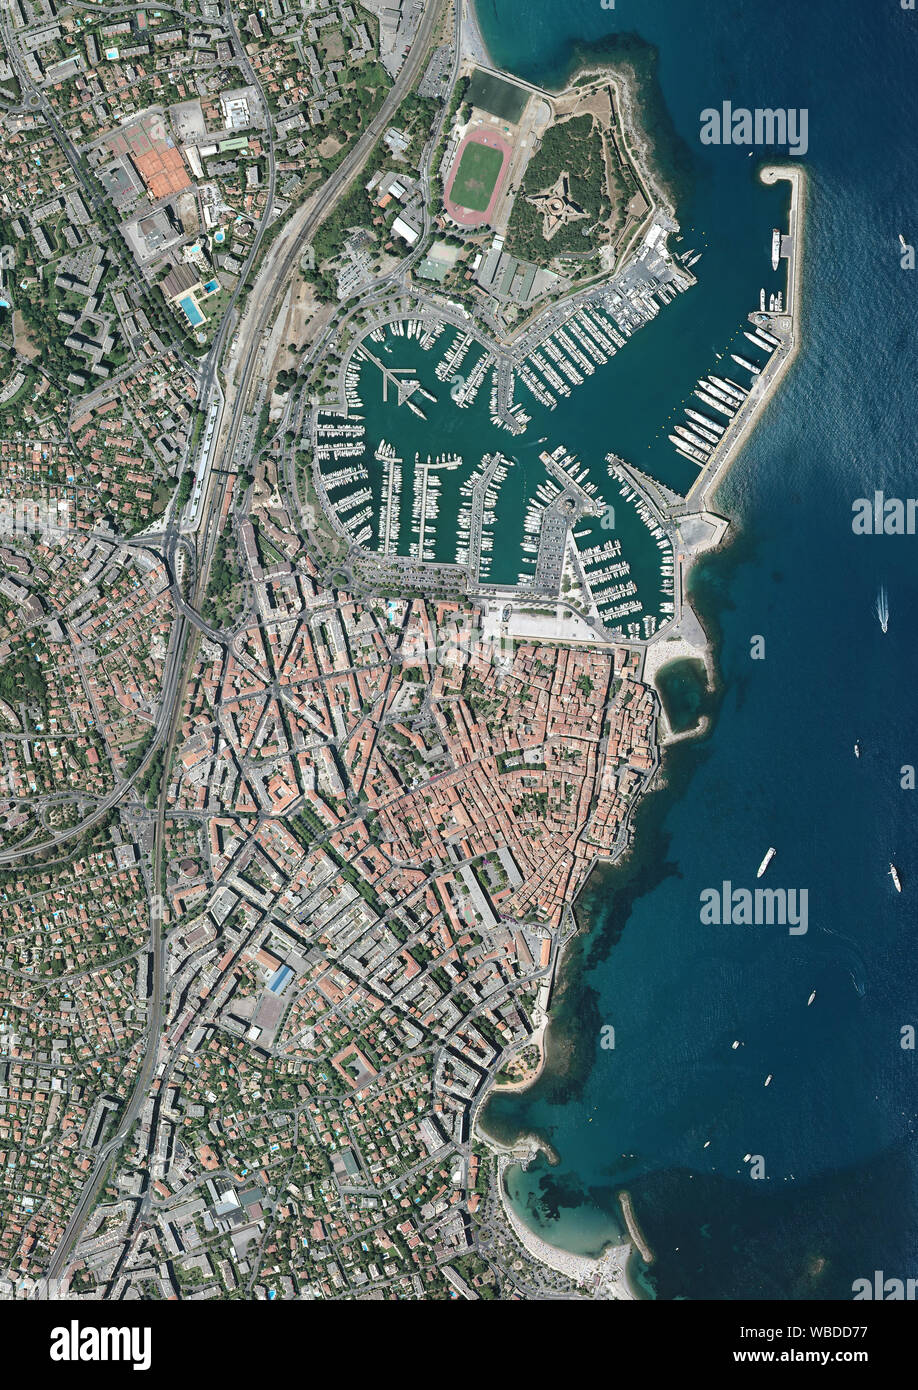 La fotografía aérea de Antibes Centro Histórico, en la Riviera Francesa en el sur de Francia. Imagen tomada en 2017. Foto de stock